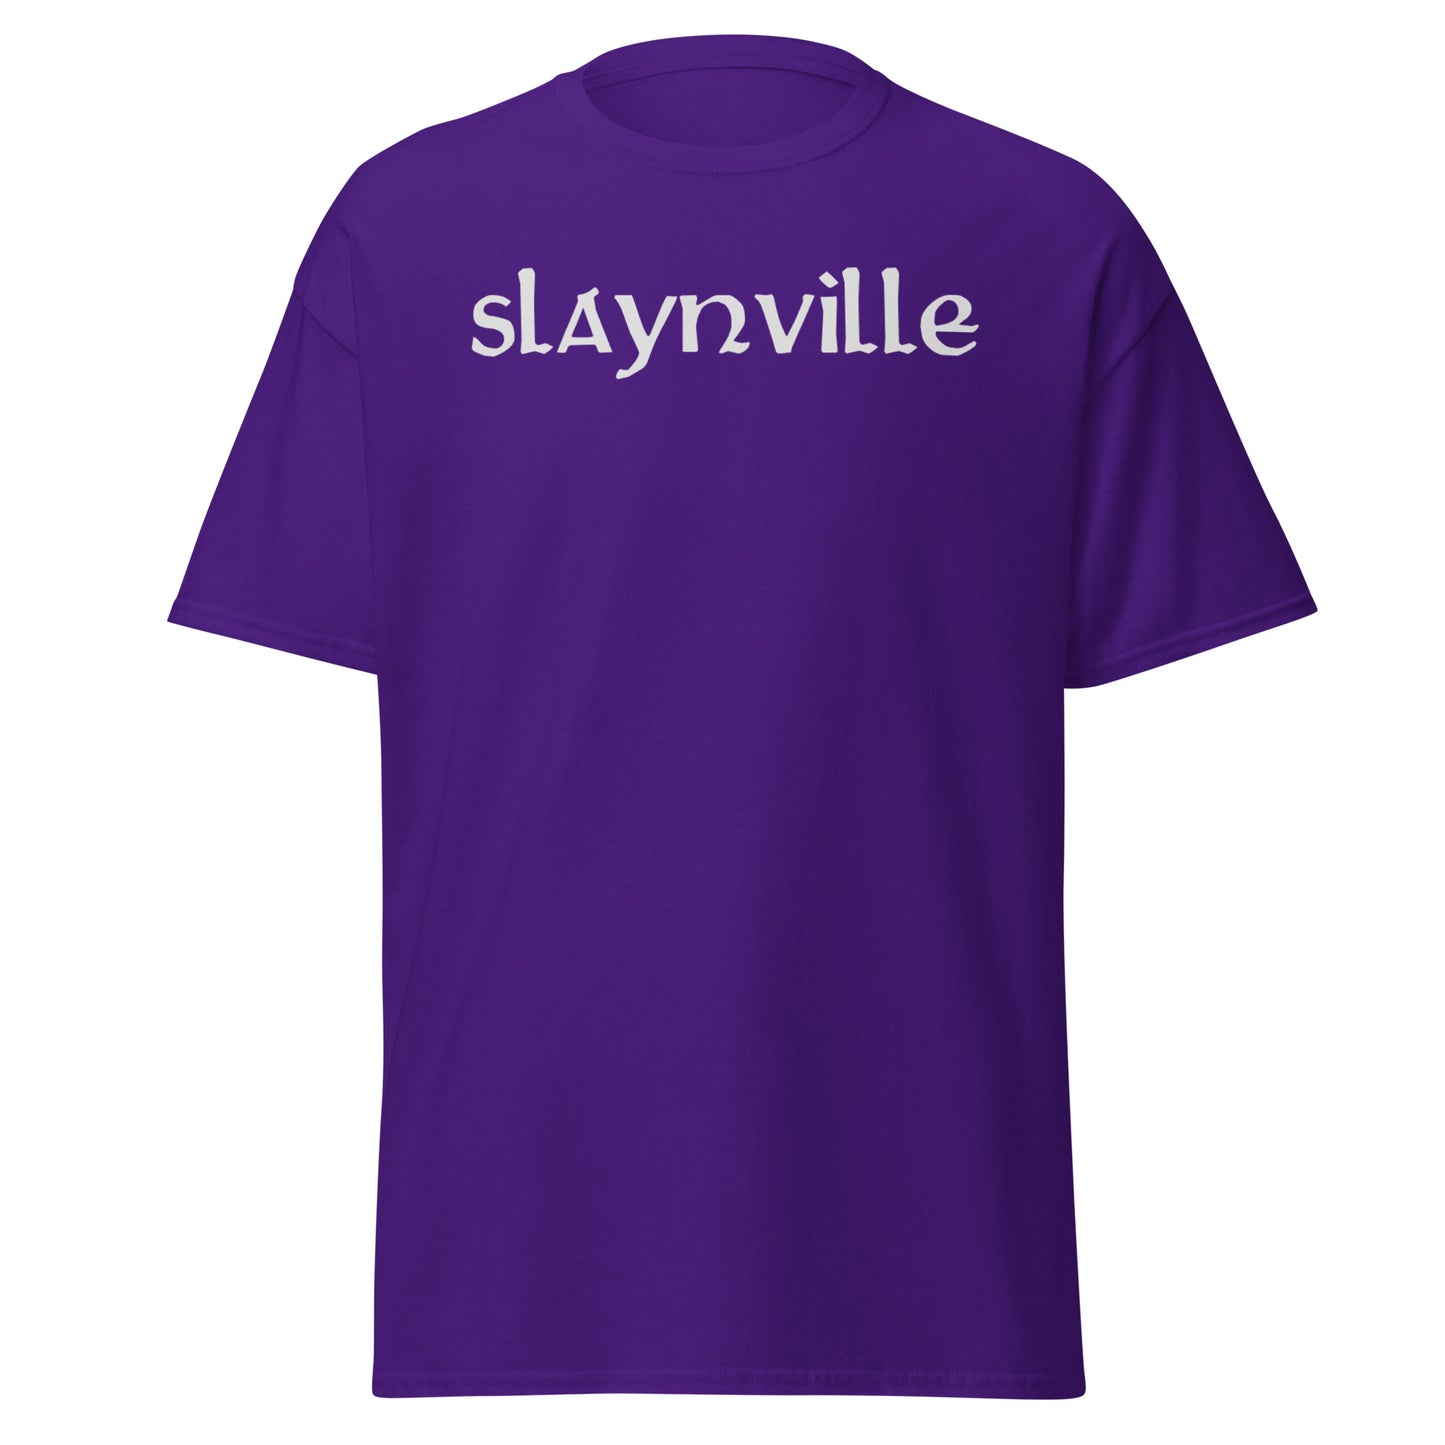 Slaynville Men's T-Shirt